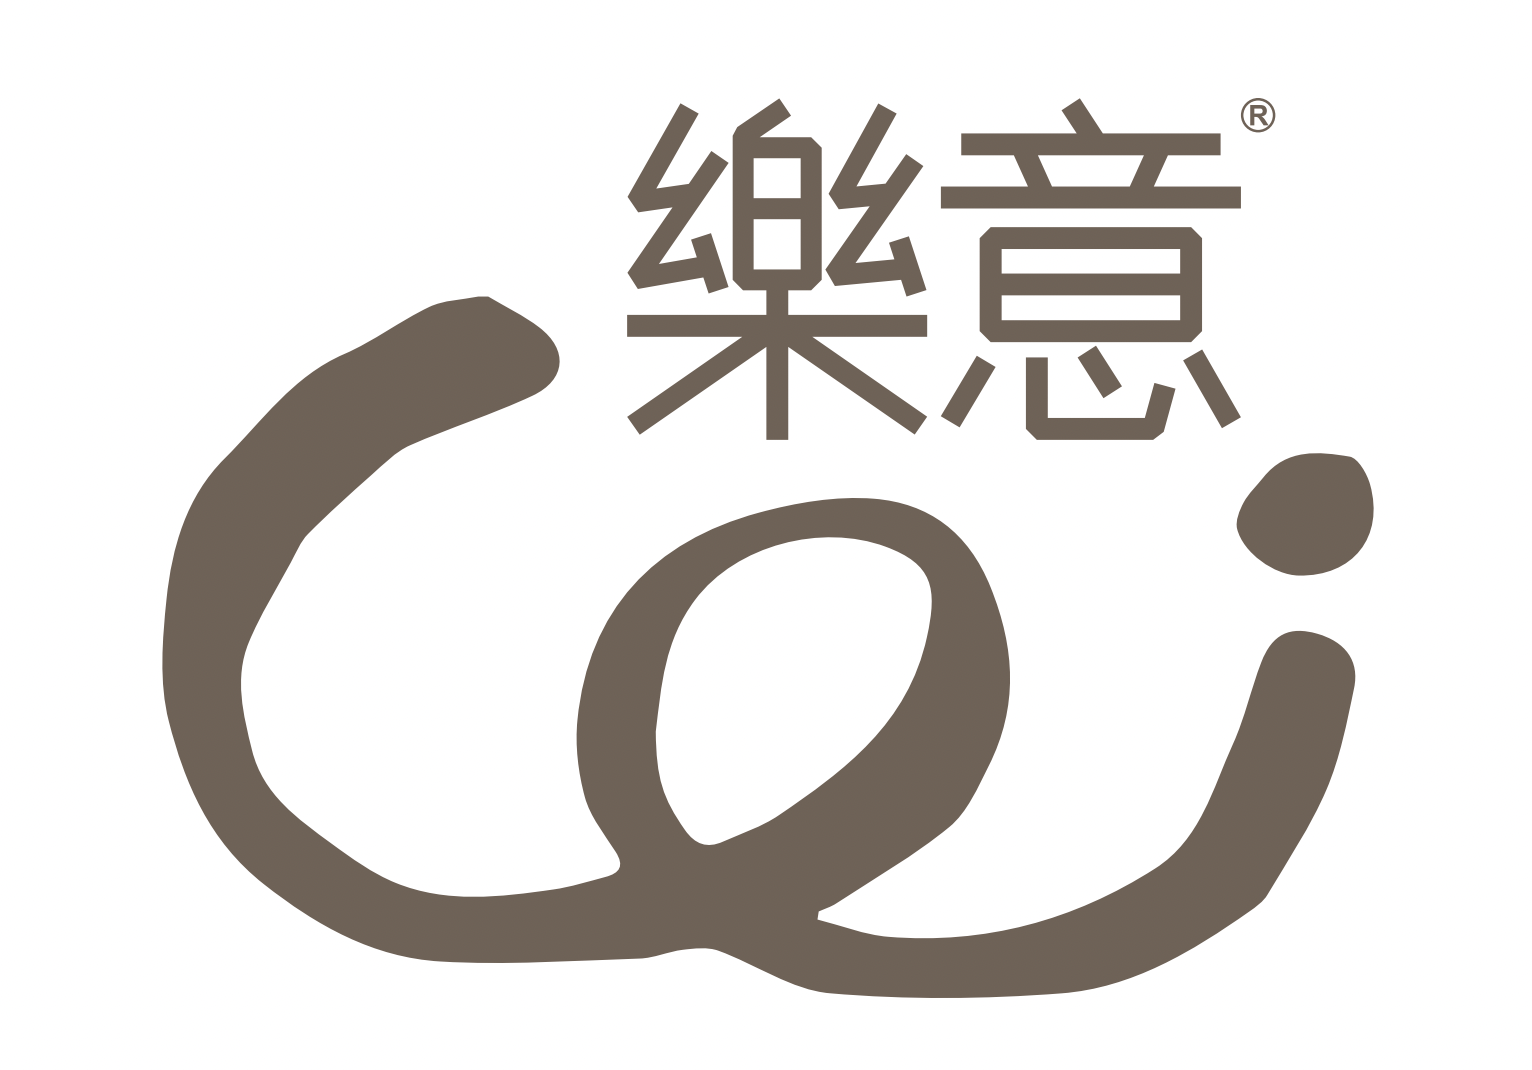 Loi Design Logo